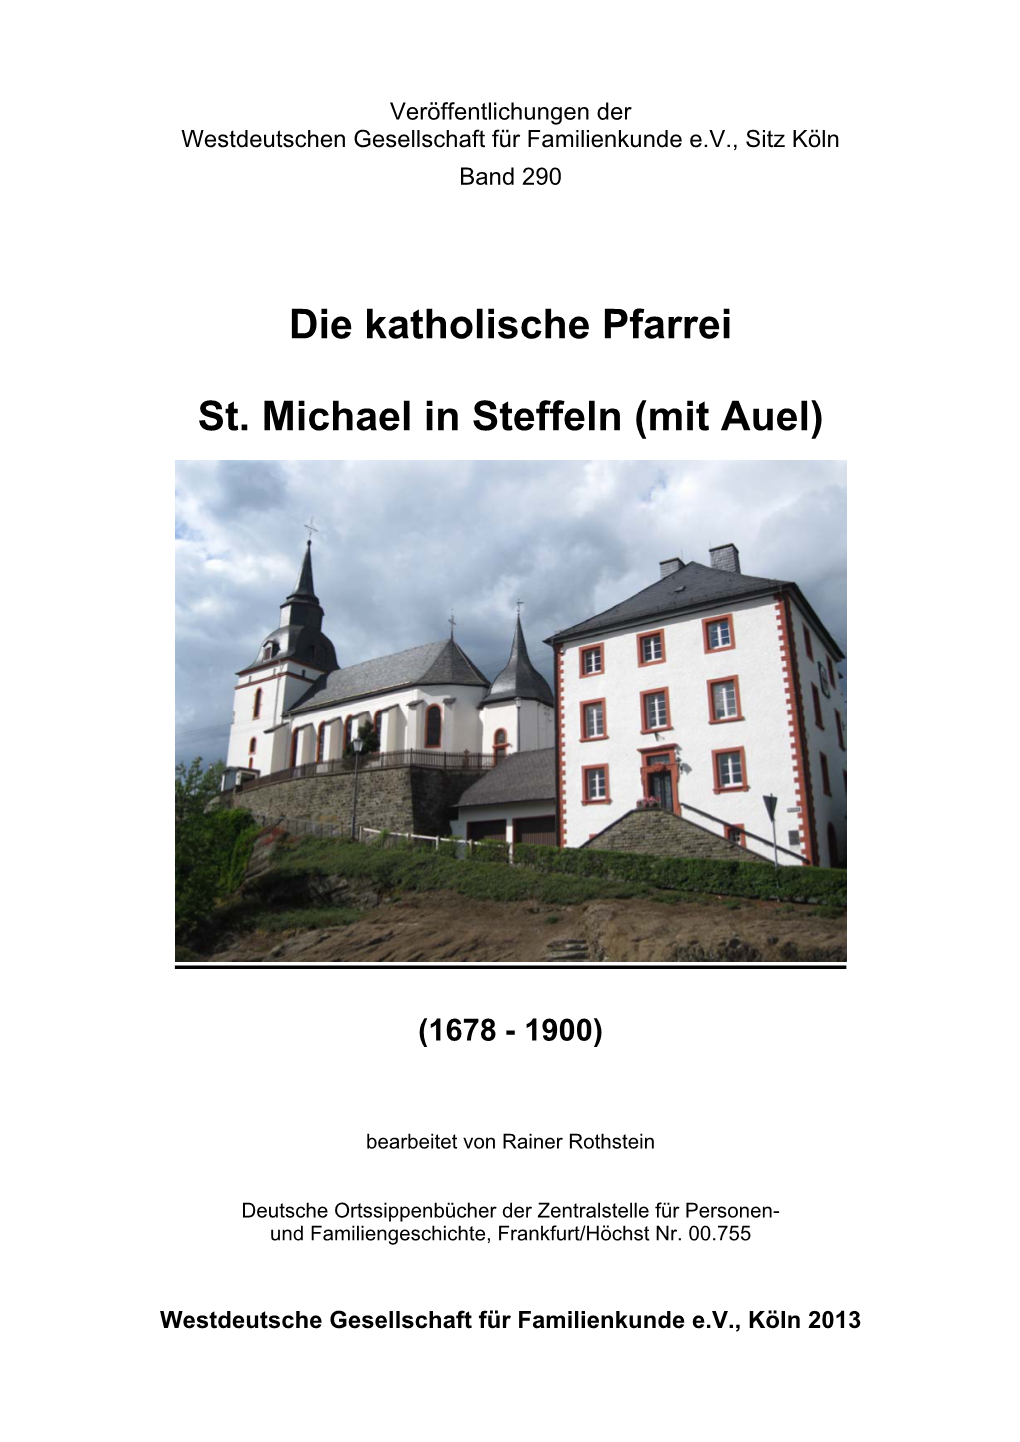 Die Kath. Pfarrei St. Michael in Steffeln (Mit Auel). Familienbuch 1678-1900